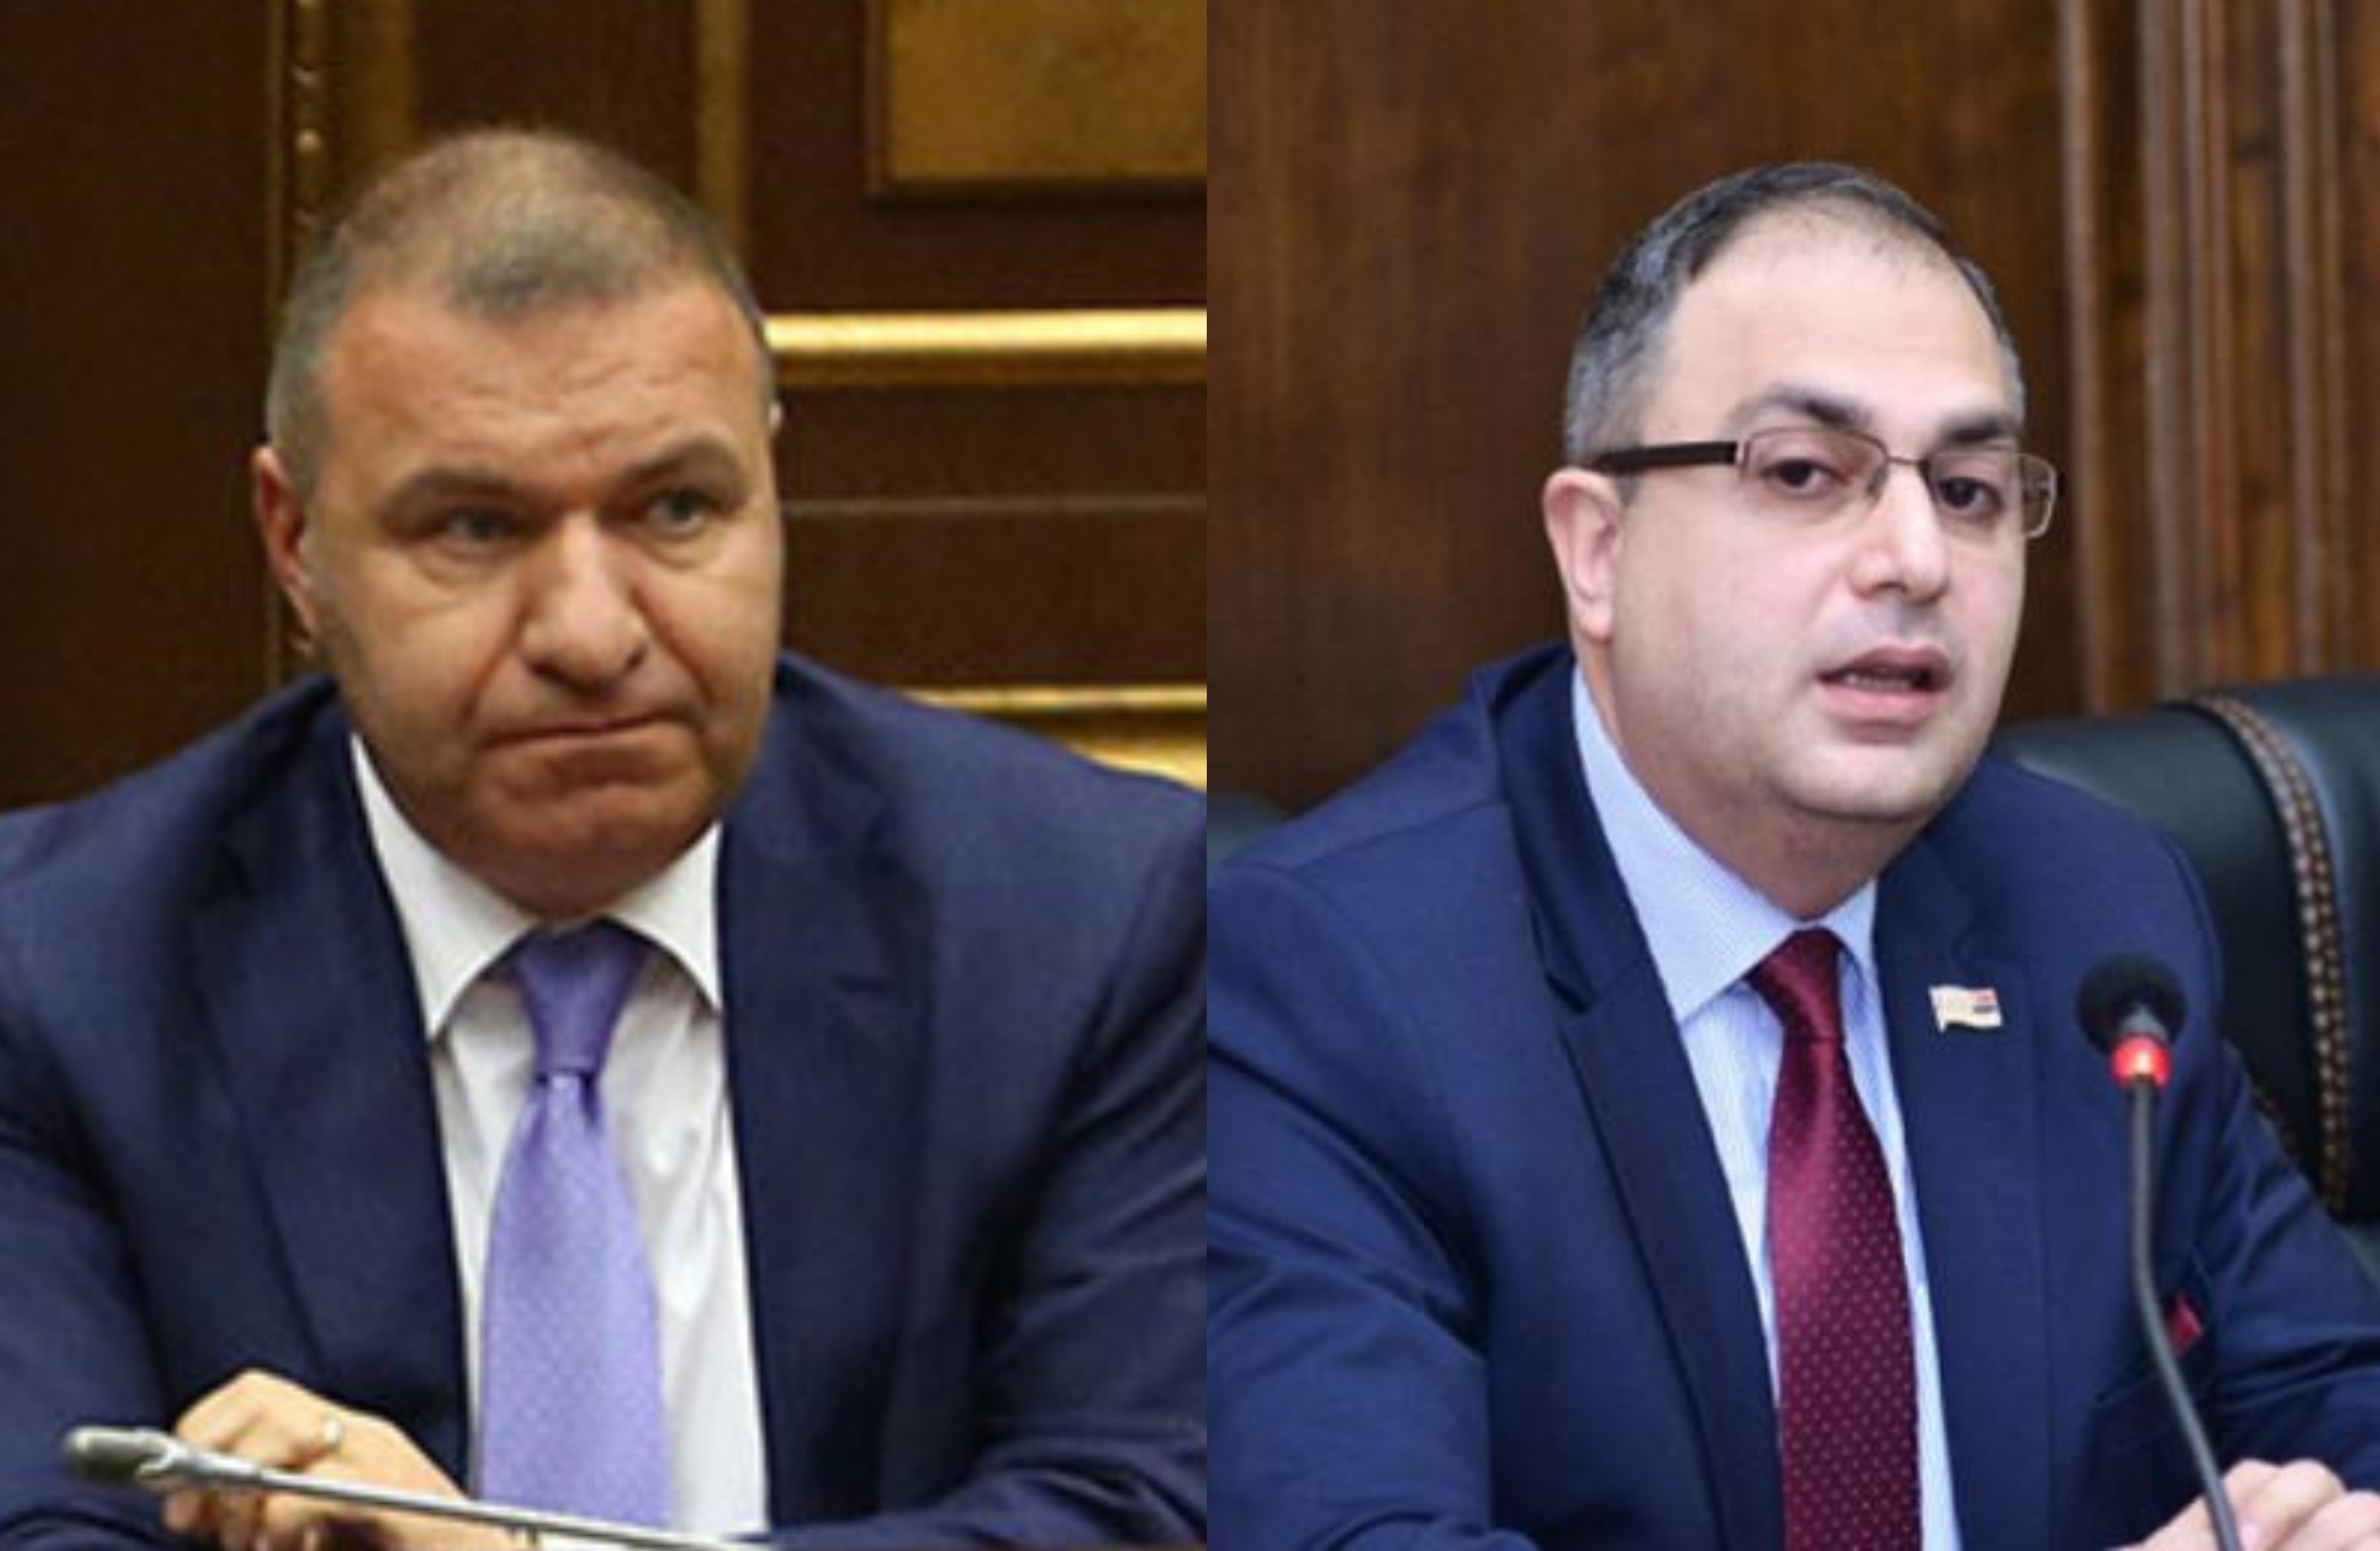 Евразийская интеграция для Армении нацелена на поиск новых рынков, развитие экономики и укрепление суверенитета: депутат